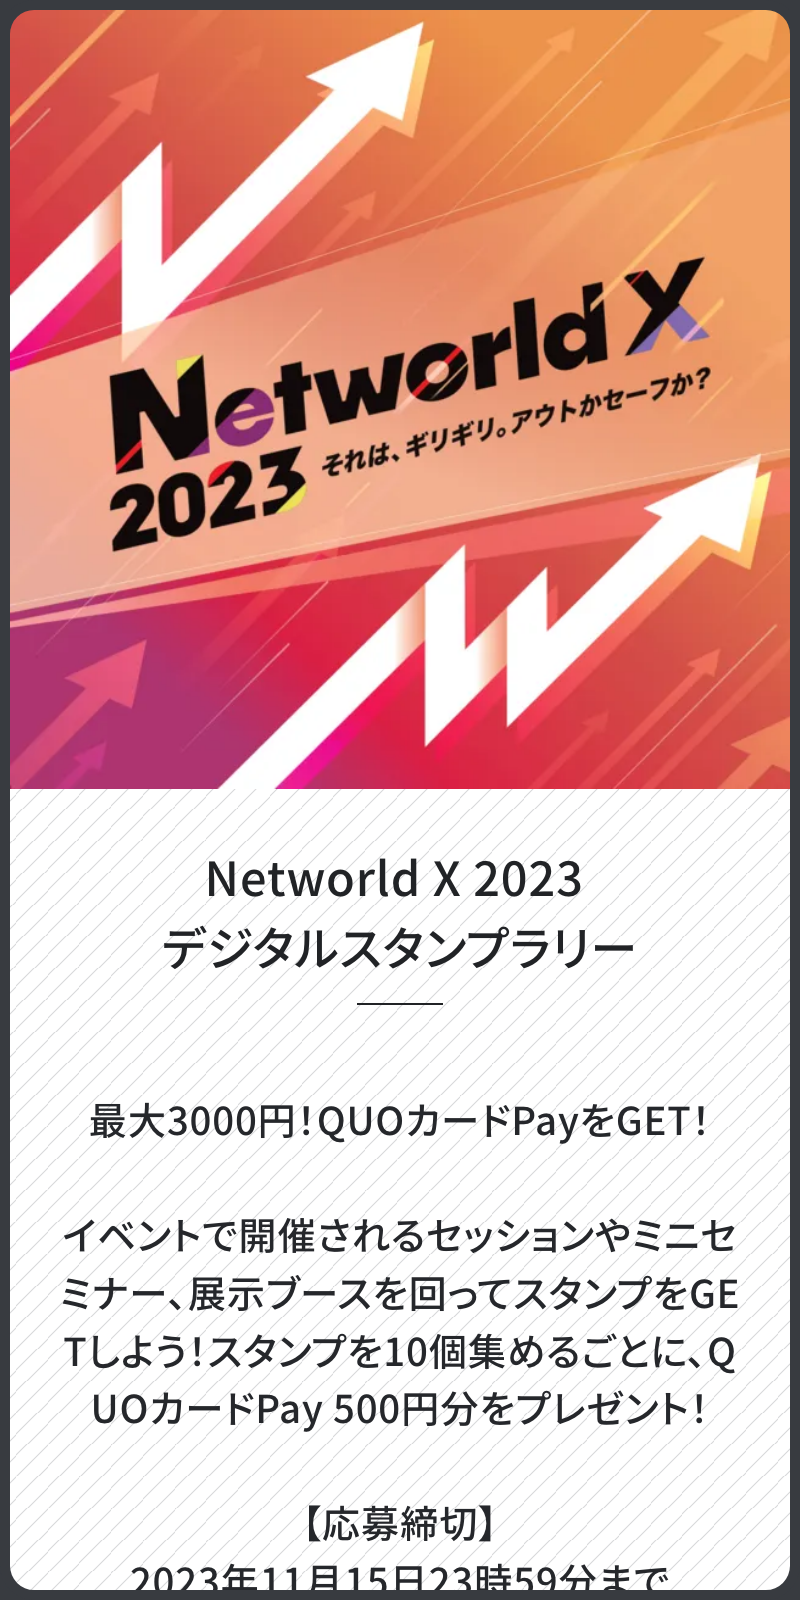 Networld X 2023 スタンプラリーのスクリーンショット 1